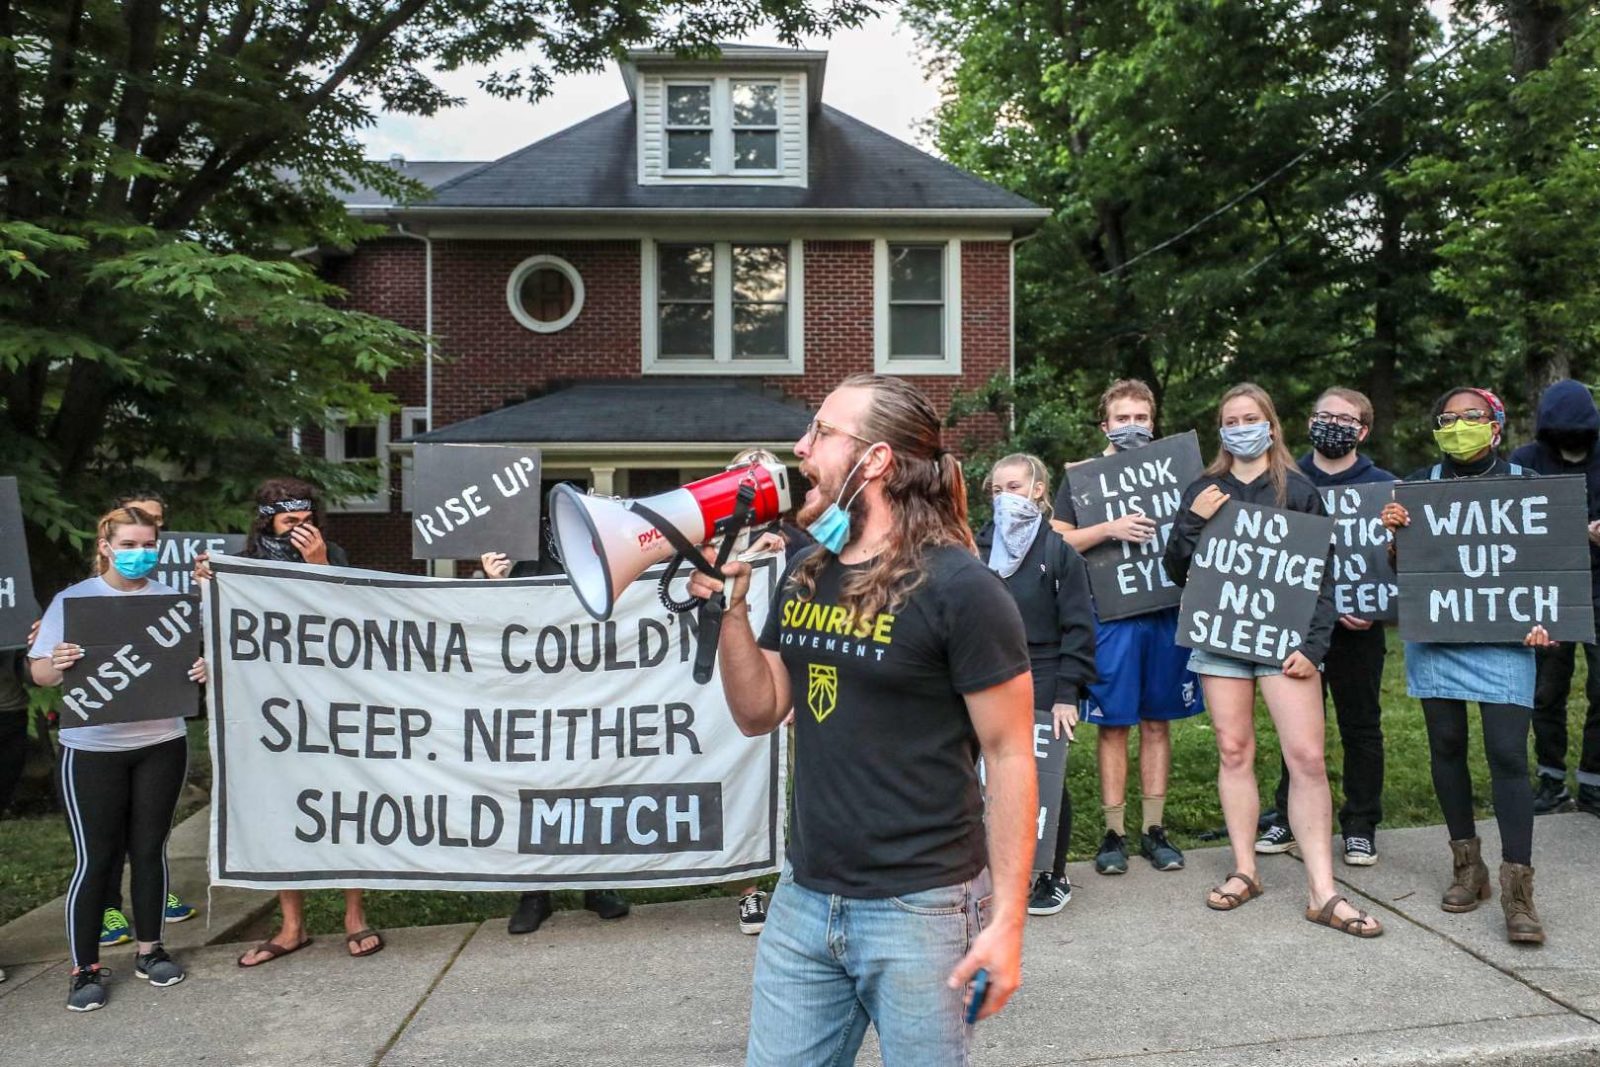 Un militant de Sunrise parle dans un mégaphone tandis que d'autres manifestants se tiennent devant la maison de Mitch McConnell à KY, tenant une grande pancarte disant "Breonna ne pouvait pas dormir. Mitch non plus ne devrait".